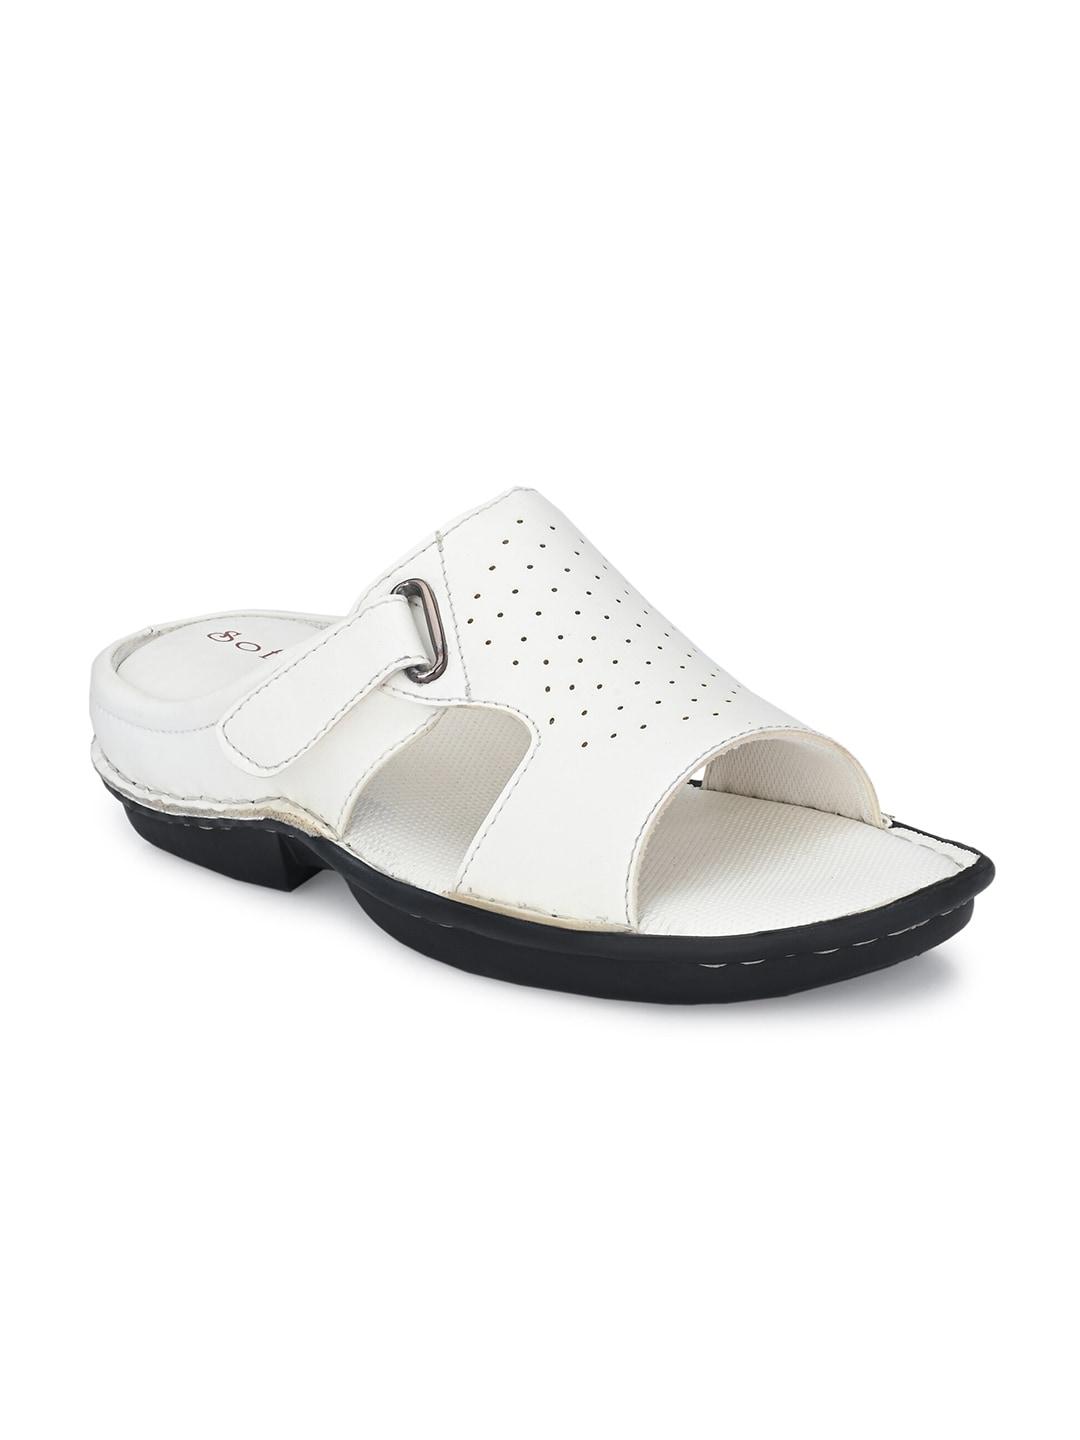 softio-men-white-comfort-sandals